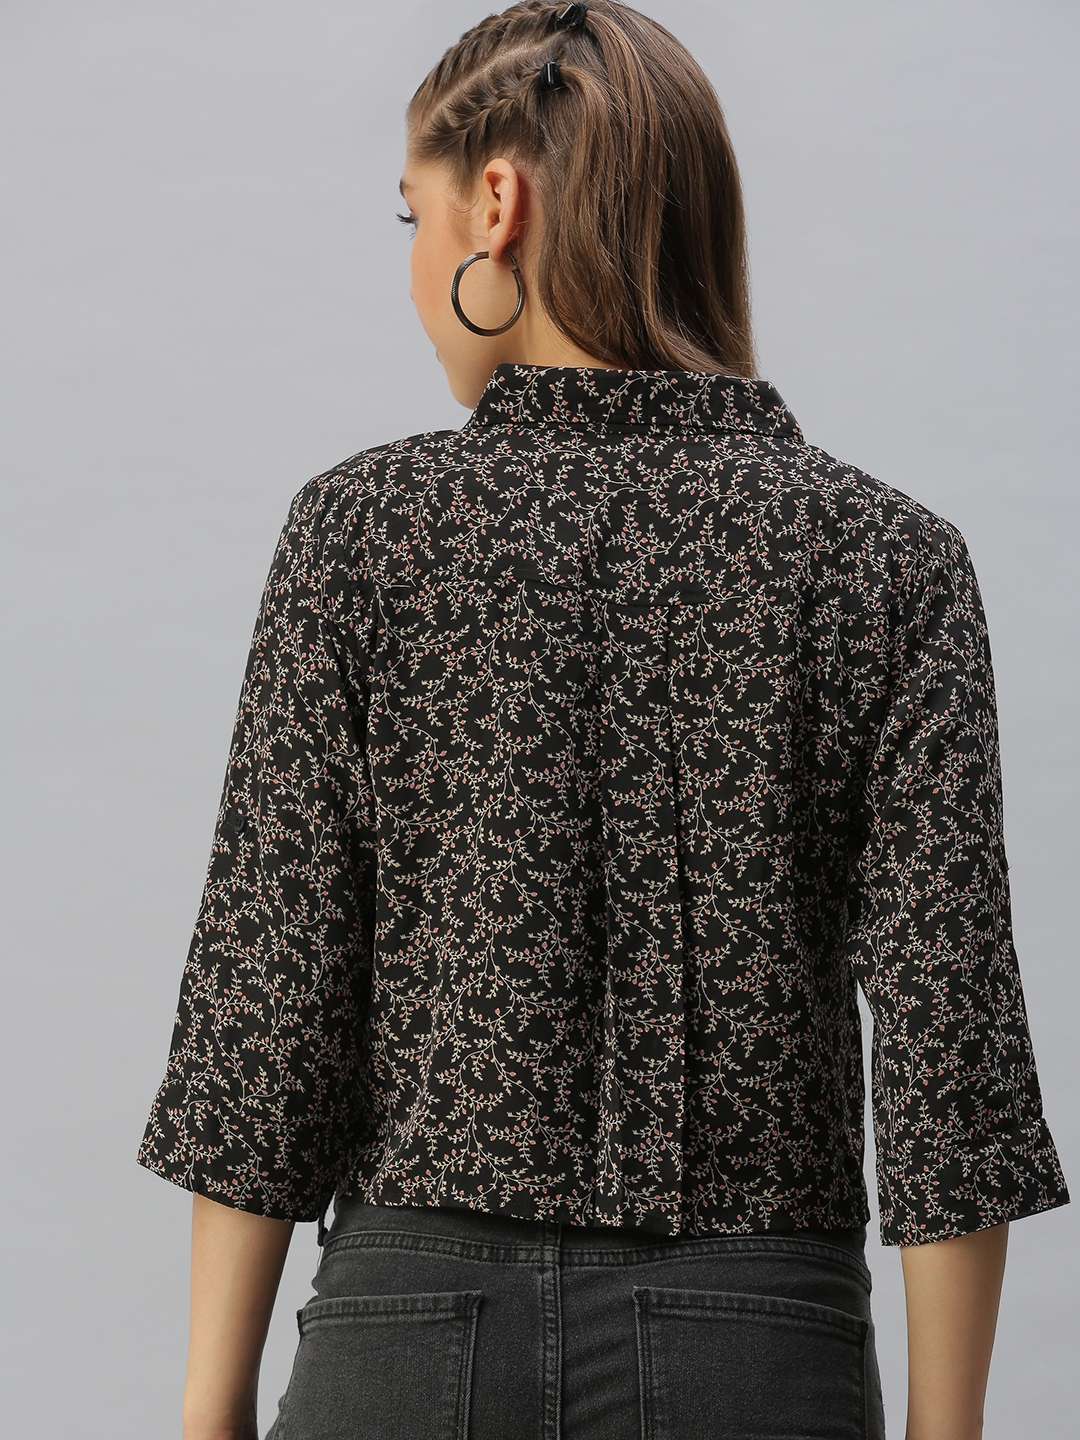 Showoff | SHOWOFF Women's Regular Fit Regular Sleeves Black Floral Shirt 3